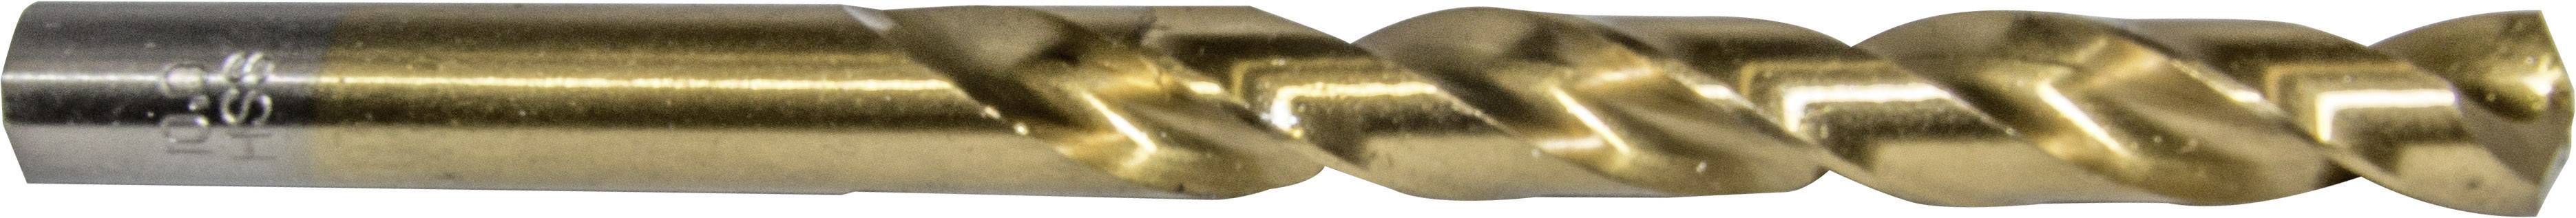 HELLER 29259 7 Metall-Spiralbohrer 1 Stück 3.5 mm Gesamtlänge 70 mm 1 St.